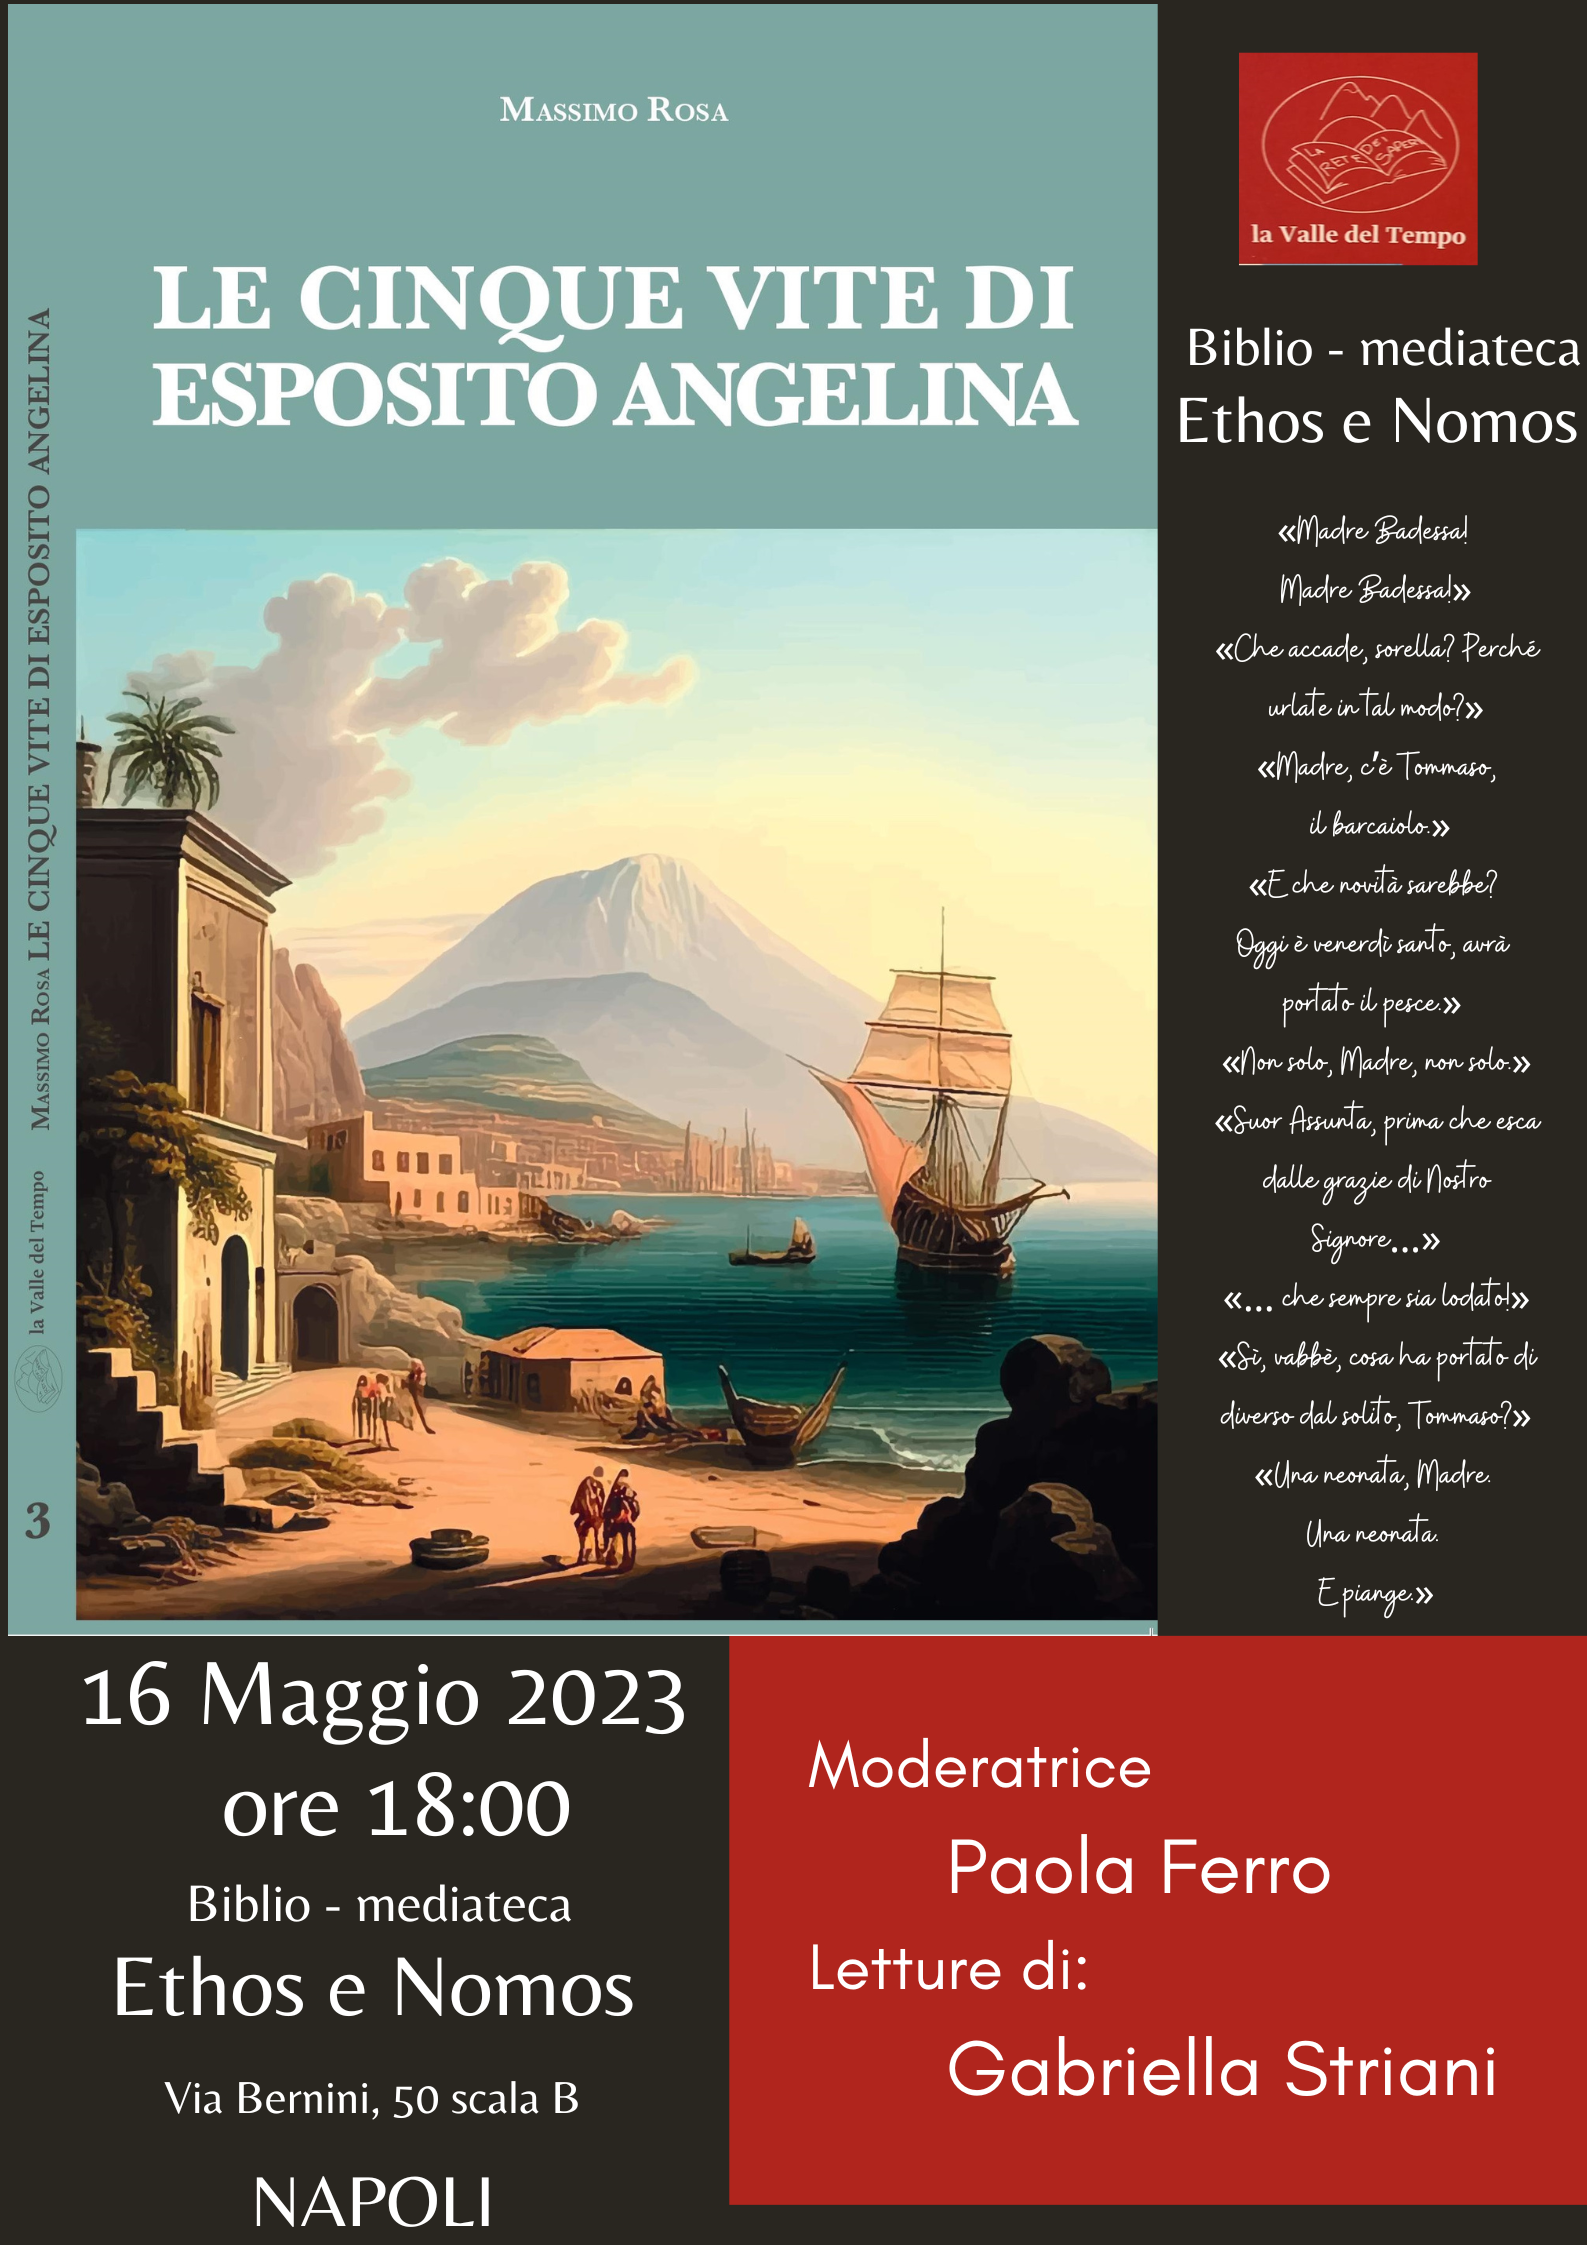 Massimo ROSA -  Presentazione romanzo storico “Angelina Esposito e le sue 5 vite”